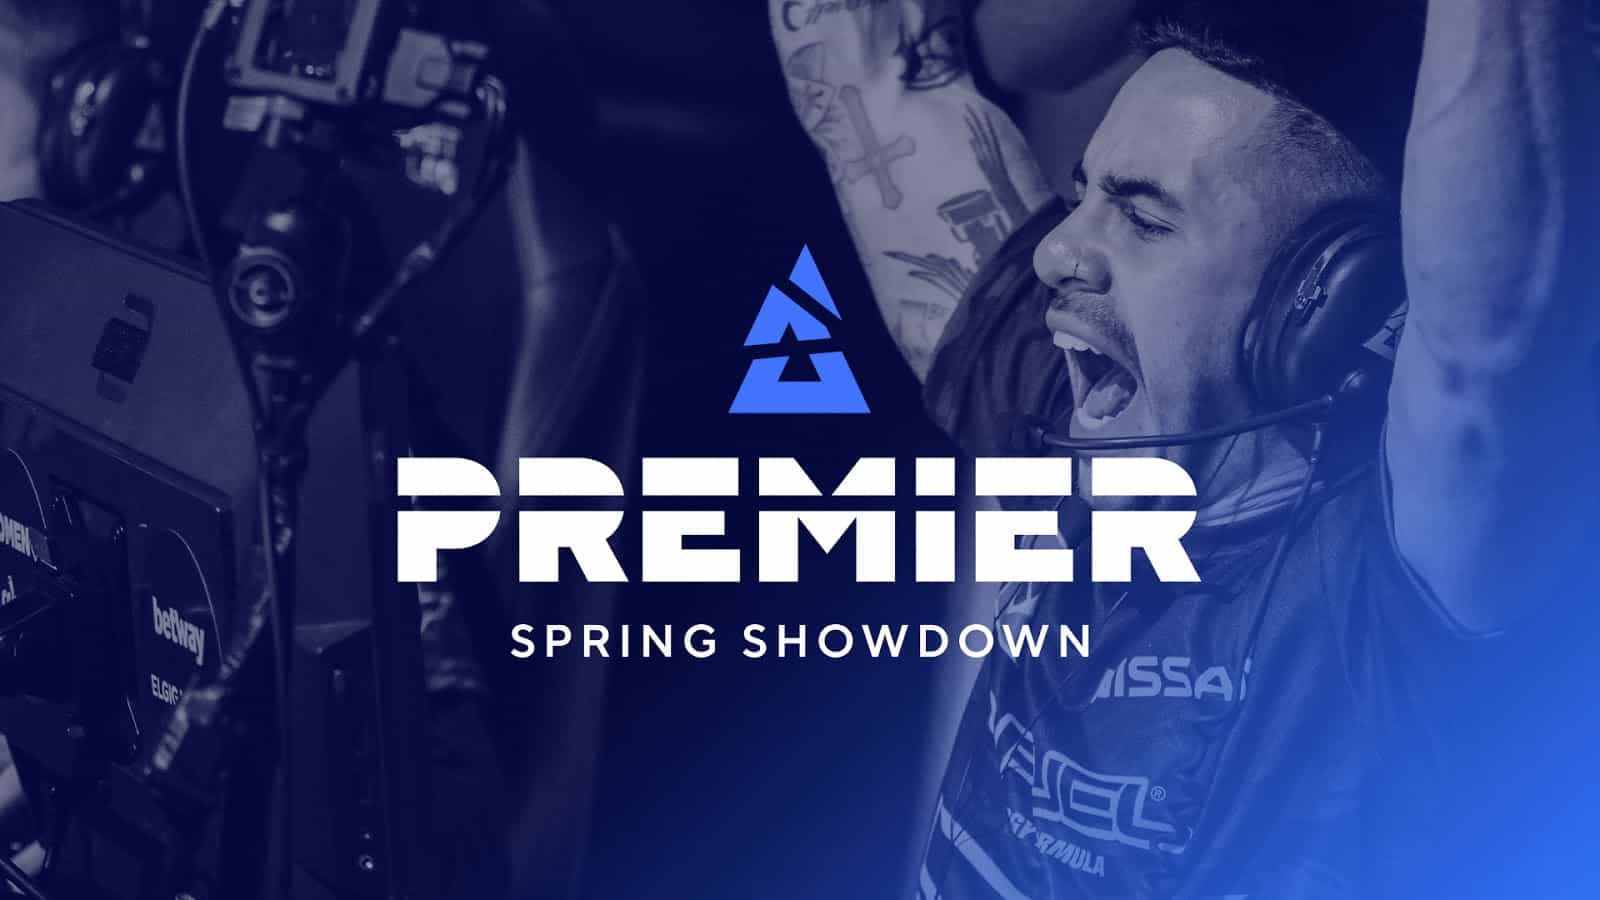 CS:GO Blast Premier NA Qualifiers Get Challengermode Boost For Spring Showdown